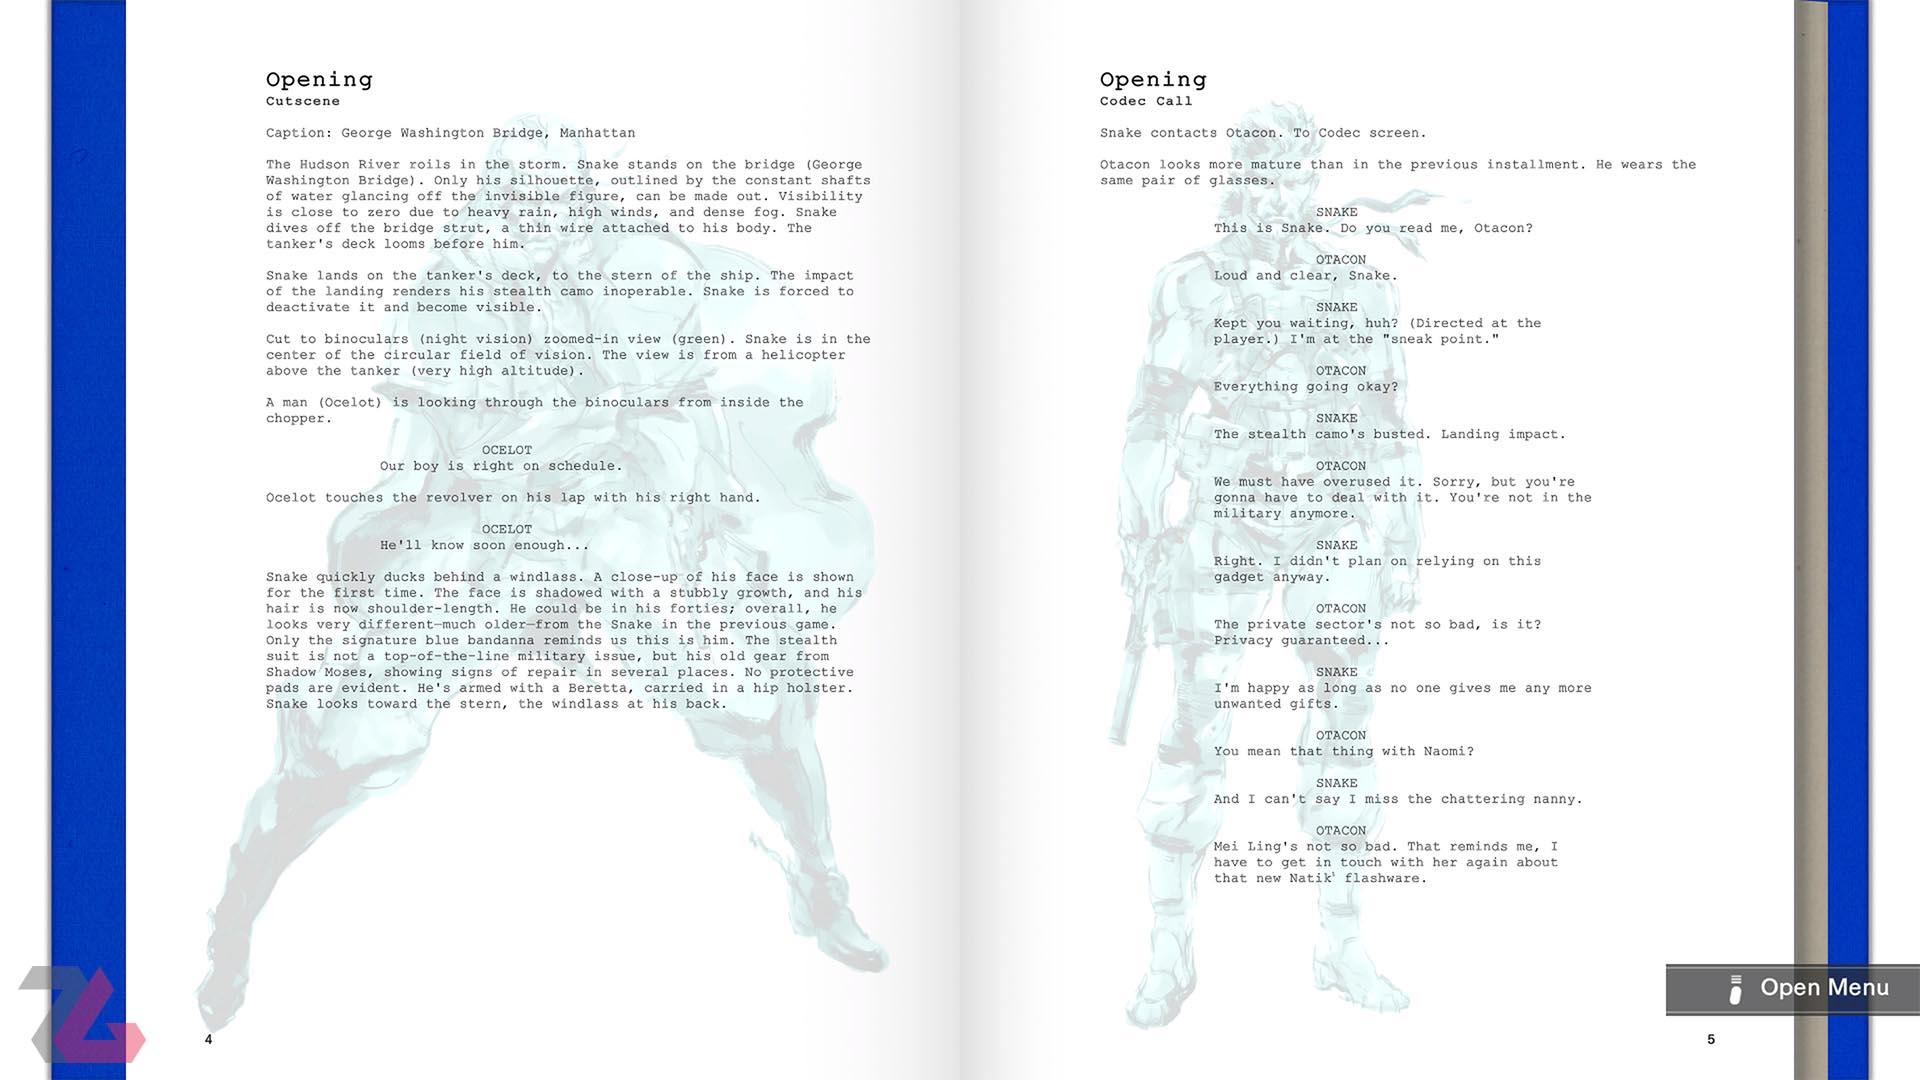 بخش داستان بازی Metal Gear Solid در مجموعه Metal Gear Solid: Master